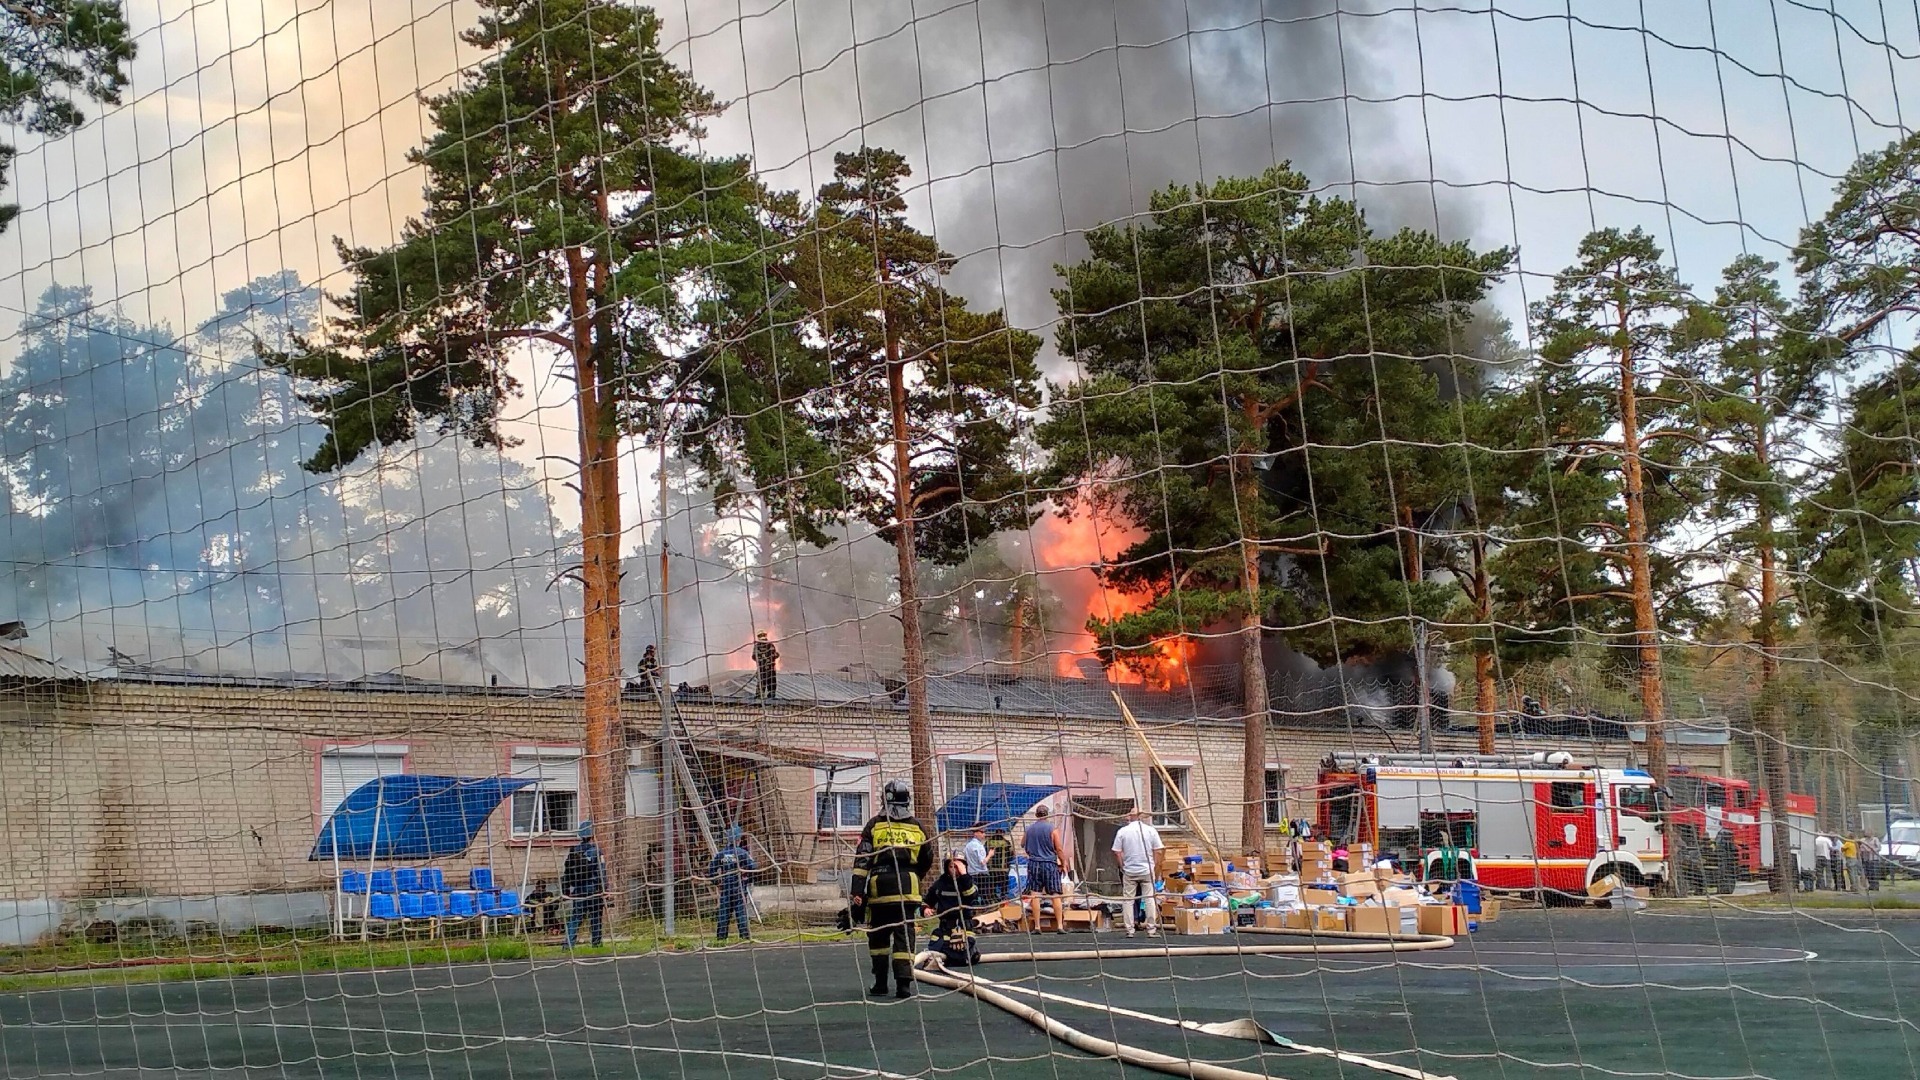 Пожар в спорткомплексе на границе соснового бора в Челябинске начинался с маленького возгорания